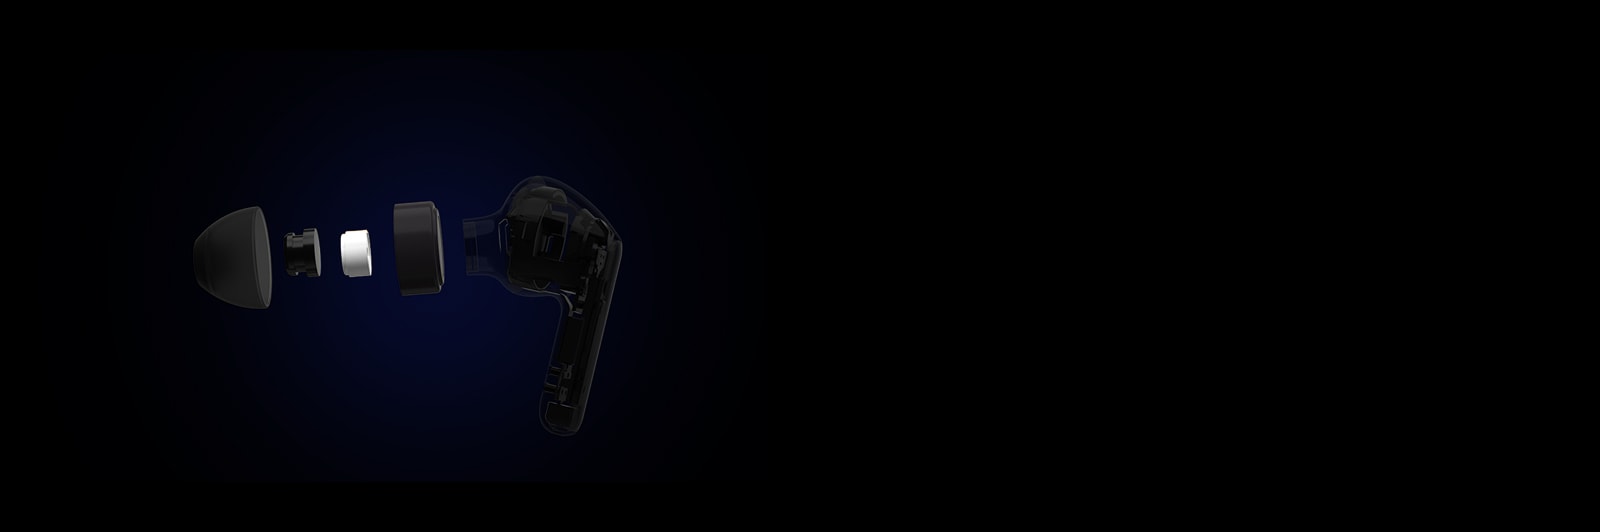 Slika crne slušalice koja je podijeljena na četiri dijela radi prikaza detaljne tehnologije kojom je sastavljena.